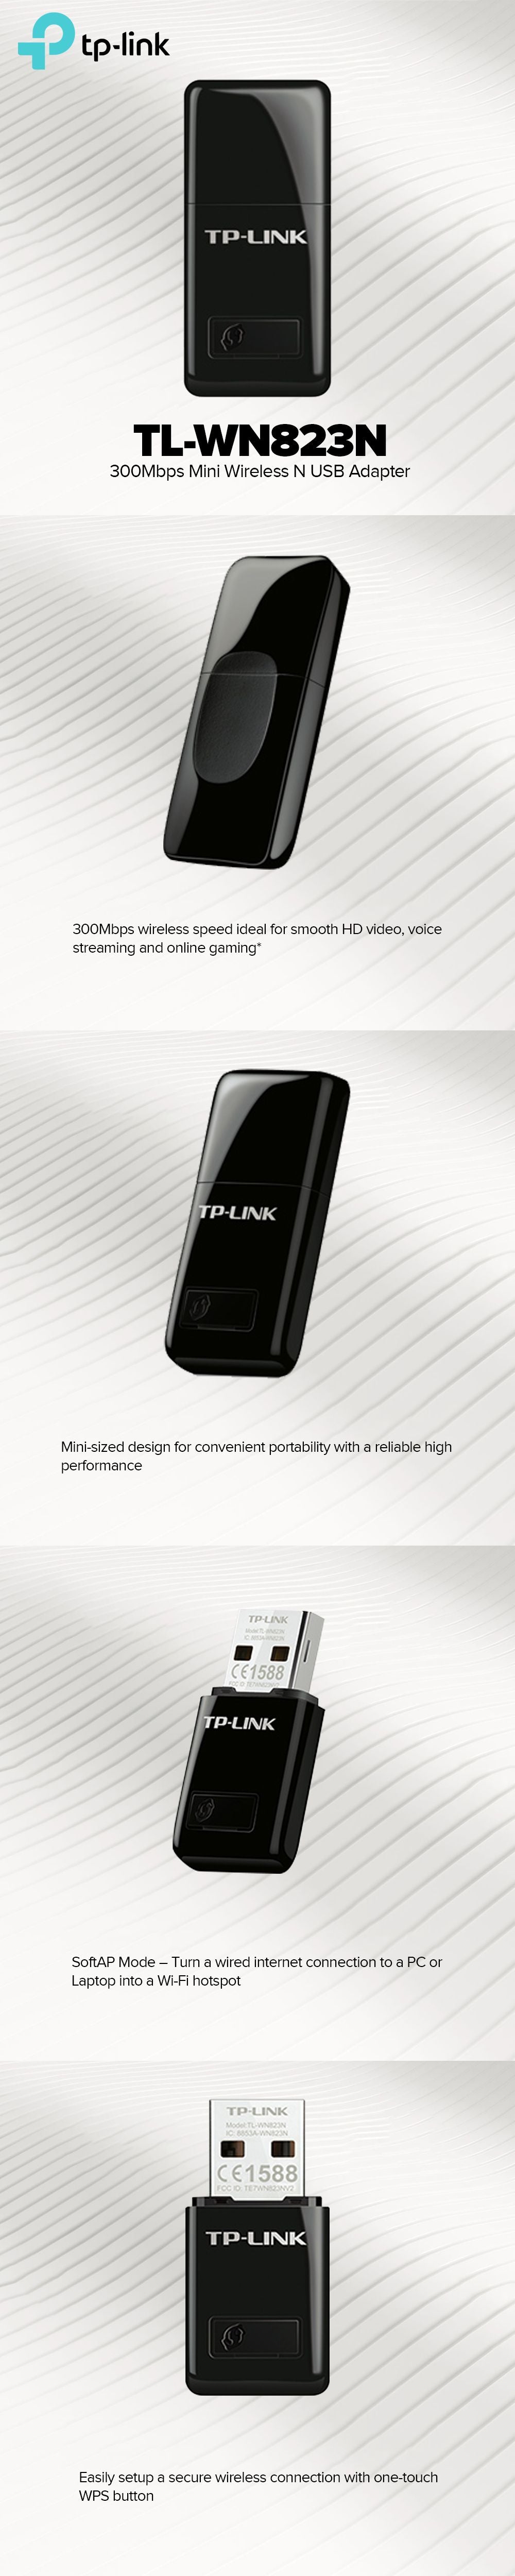 ADAPTATEUR USB WIFI 300 TL-WN823N TP-LINK